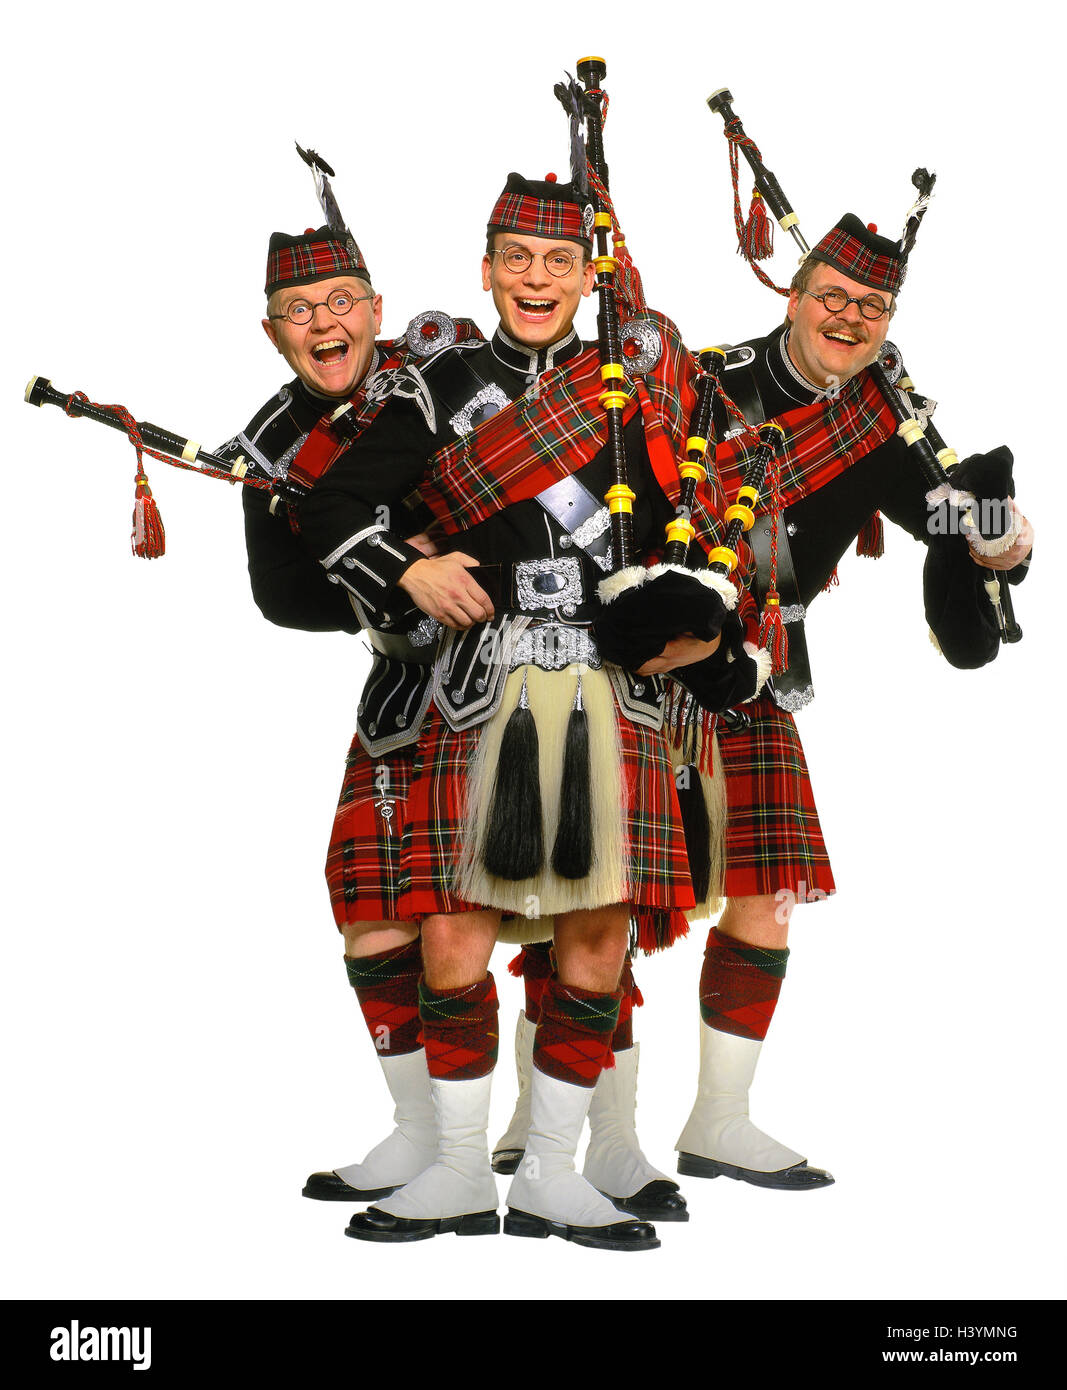 Gli scozzesi, cornamusa, ridere, gesto, concetti, Scozia, uomini, musicisti, tre, cornamuse, vestiti, strumenti musicali, tradizione, Scot rock, kilt, stand, ridere fianco a fianco, felice, fuso, studio Foto Stock